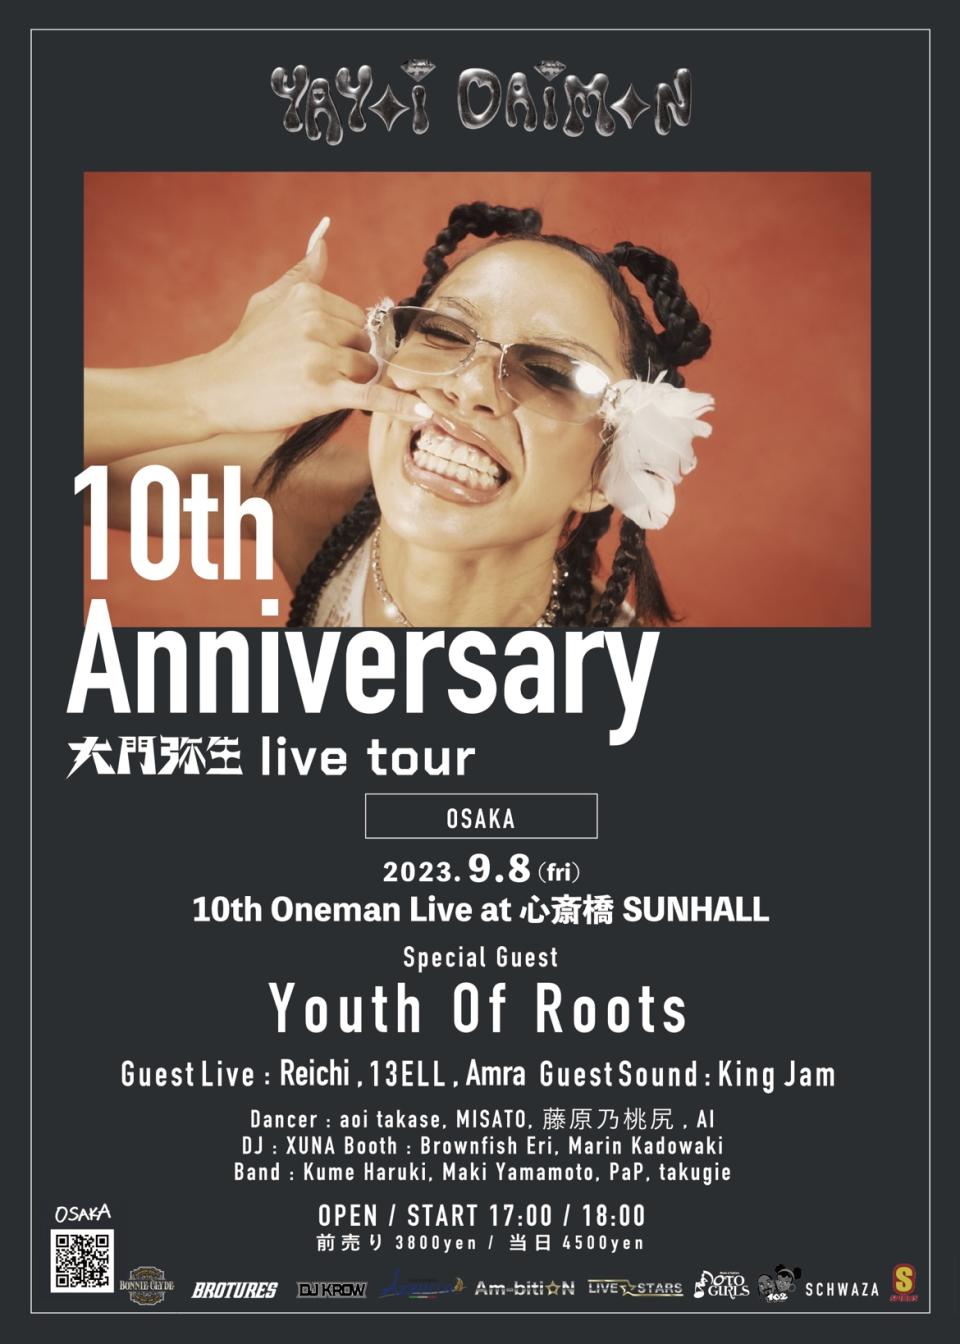 2023.09.08 【ツアー大阪】10th Anniversary Live Tour in OSAKA at SUNHALL (OSAKA)